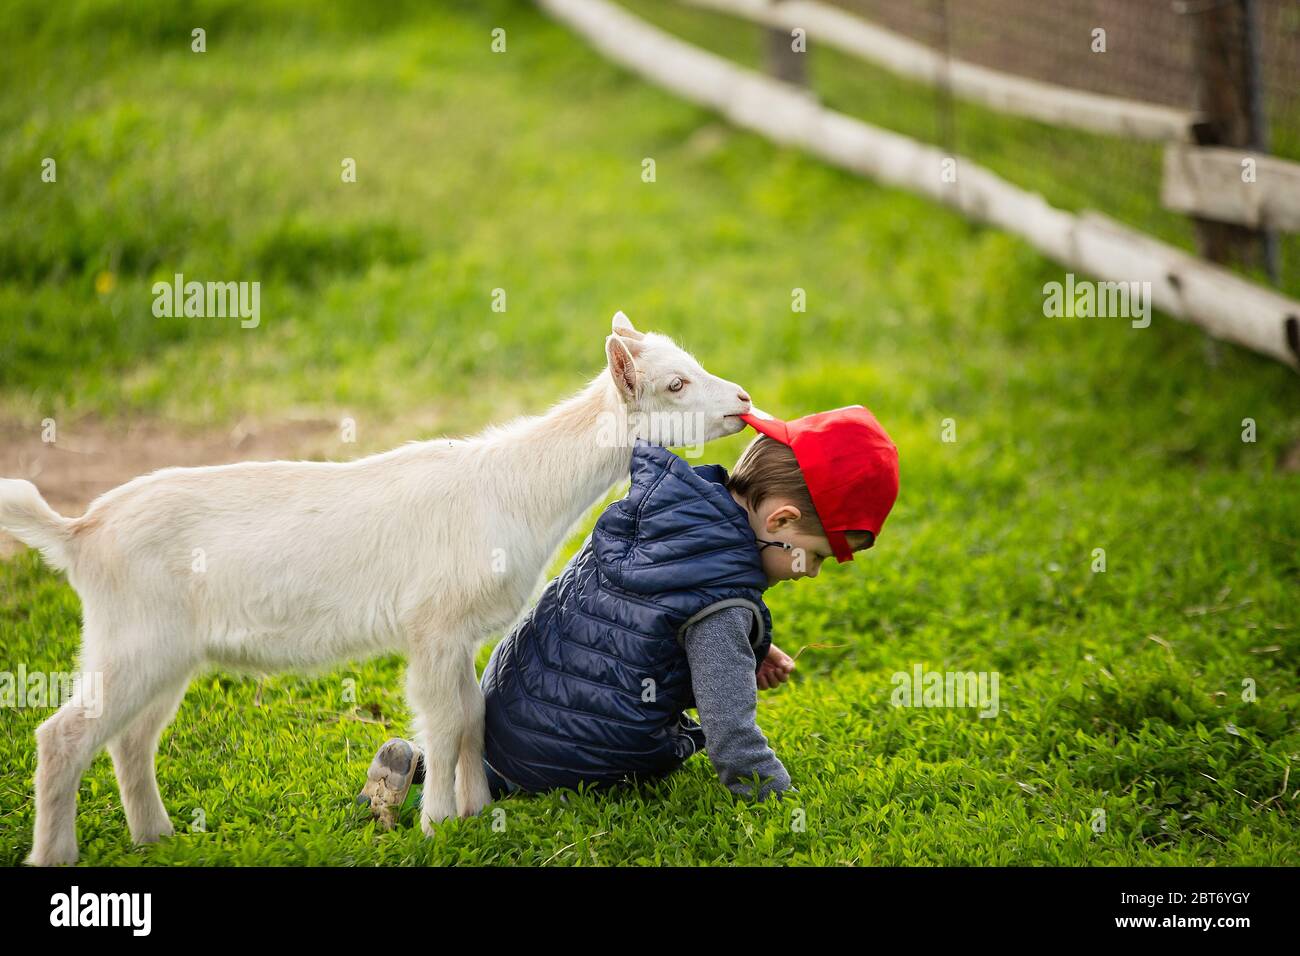 il ragazzo togli il cappello dalla testa del ragazzo, il ragazzo cadde sull'erba, la capra attaccò il ragazzo, una fattoria nel villaggio, erba verde, ragazzo nella ha rossa Foto Stock